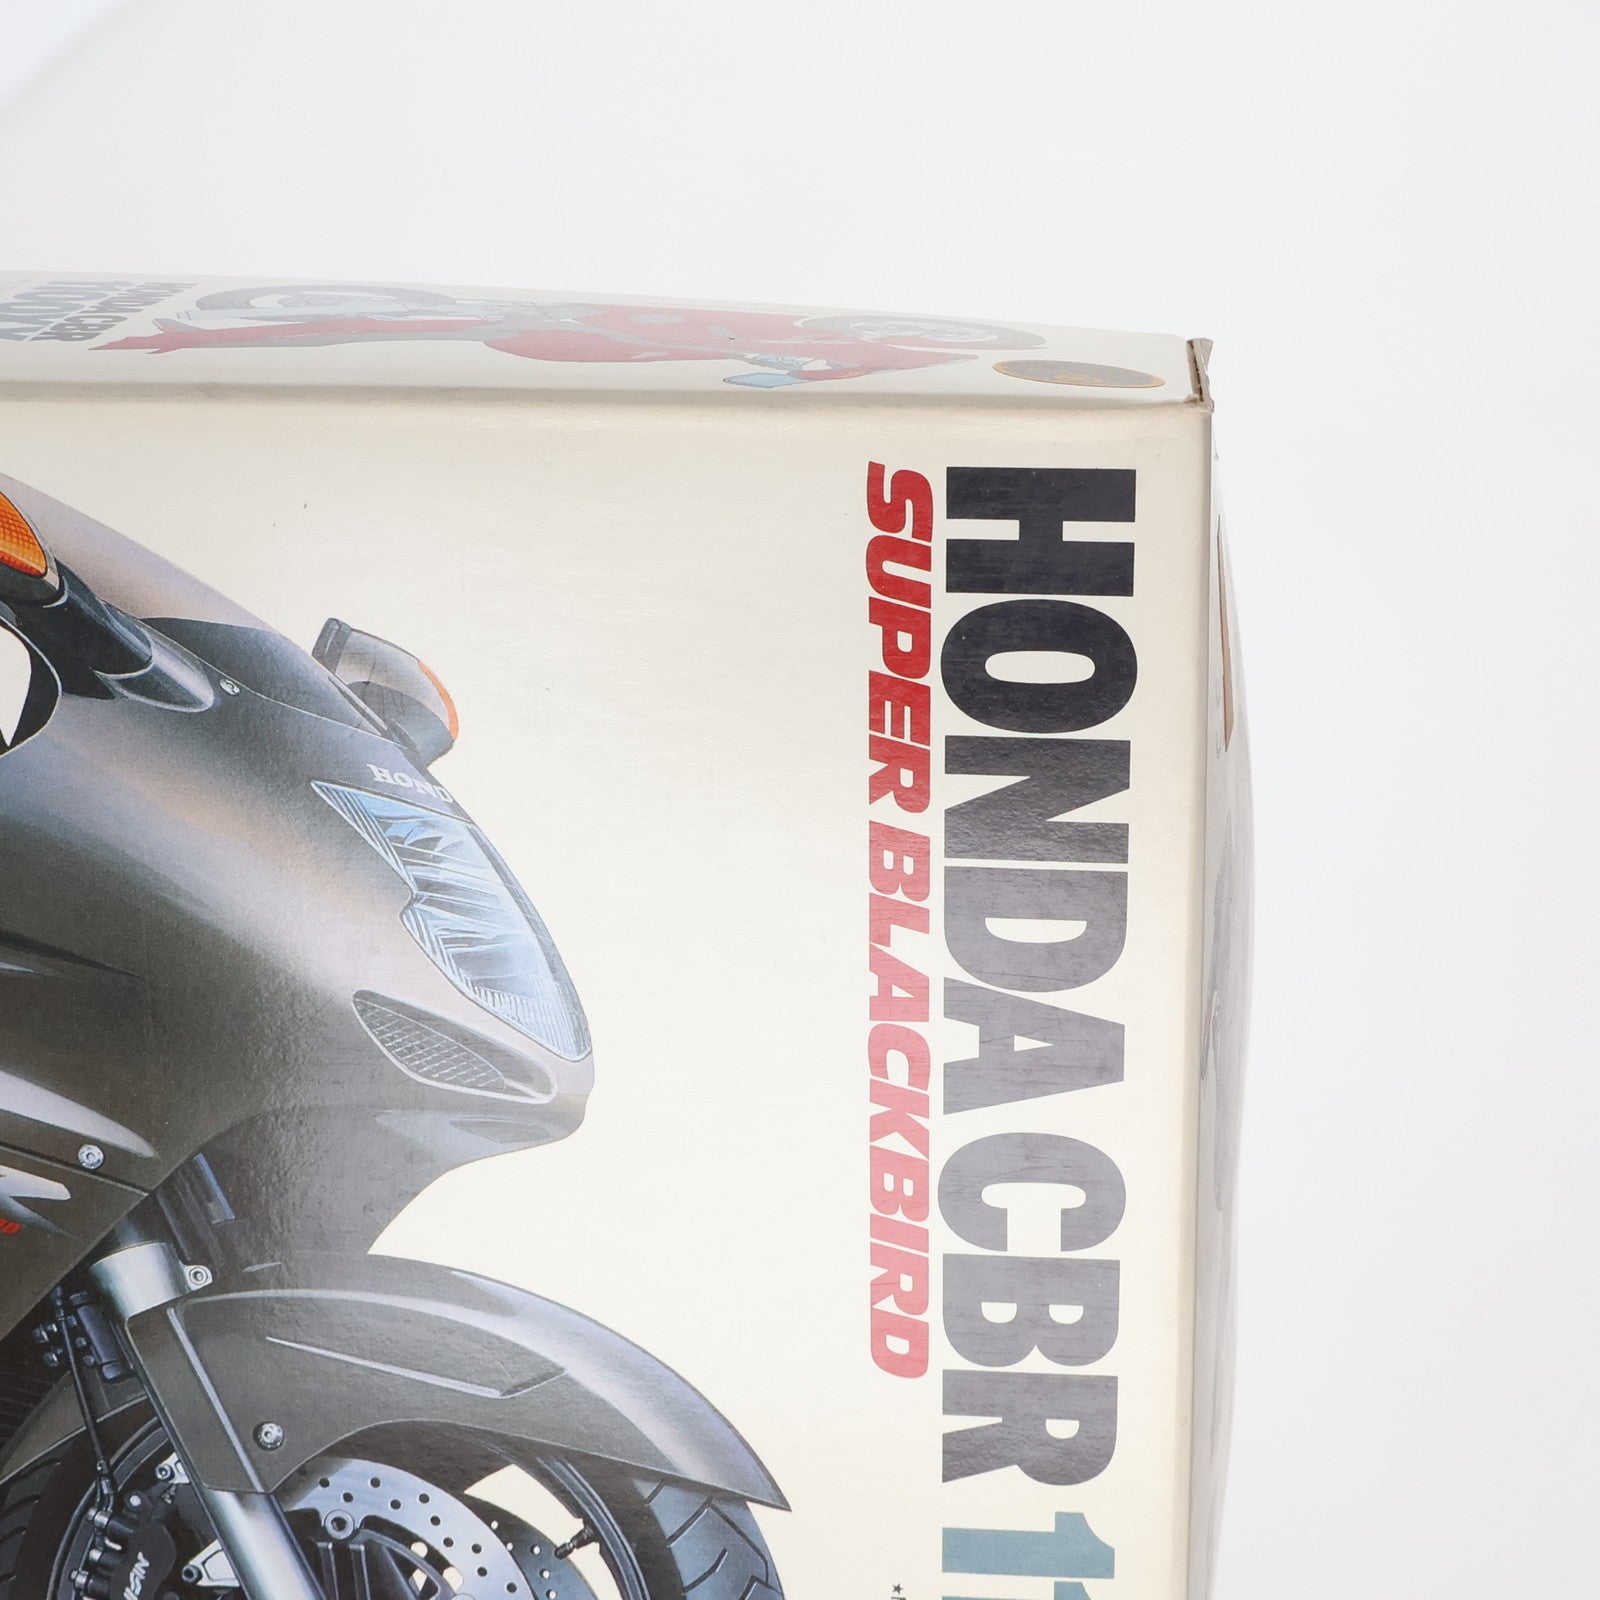 【中古即納】[PTM]オートバイシリーズ No.70 1/12 Honda(ホンダ) CBR1100XXスーパーブラックバード プラモデル(14070) タミヤ(19971130)